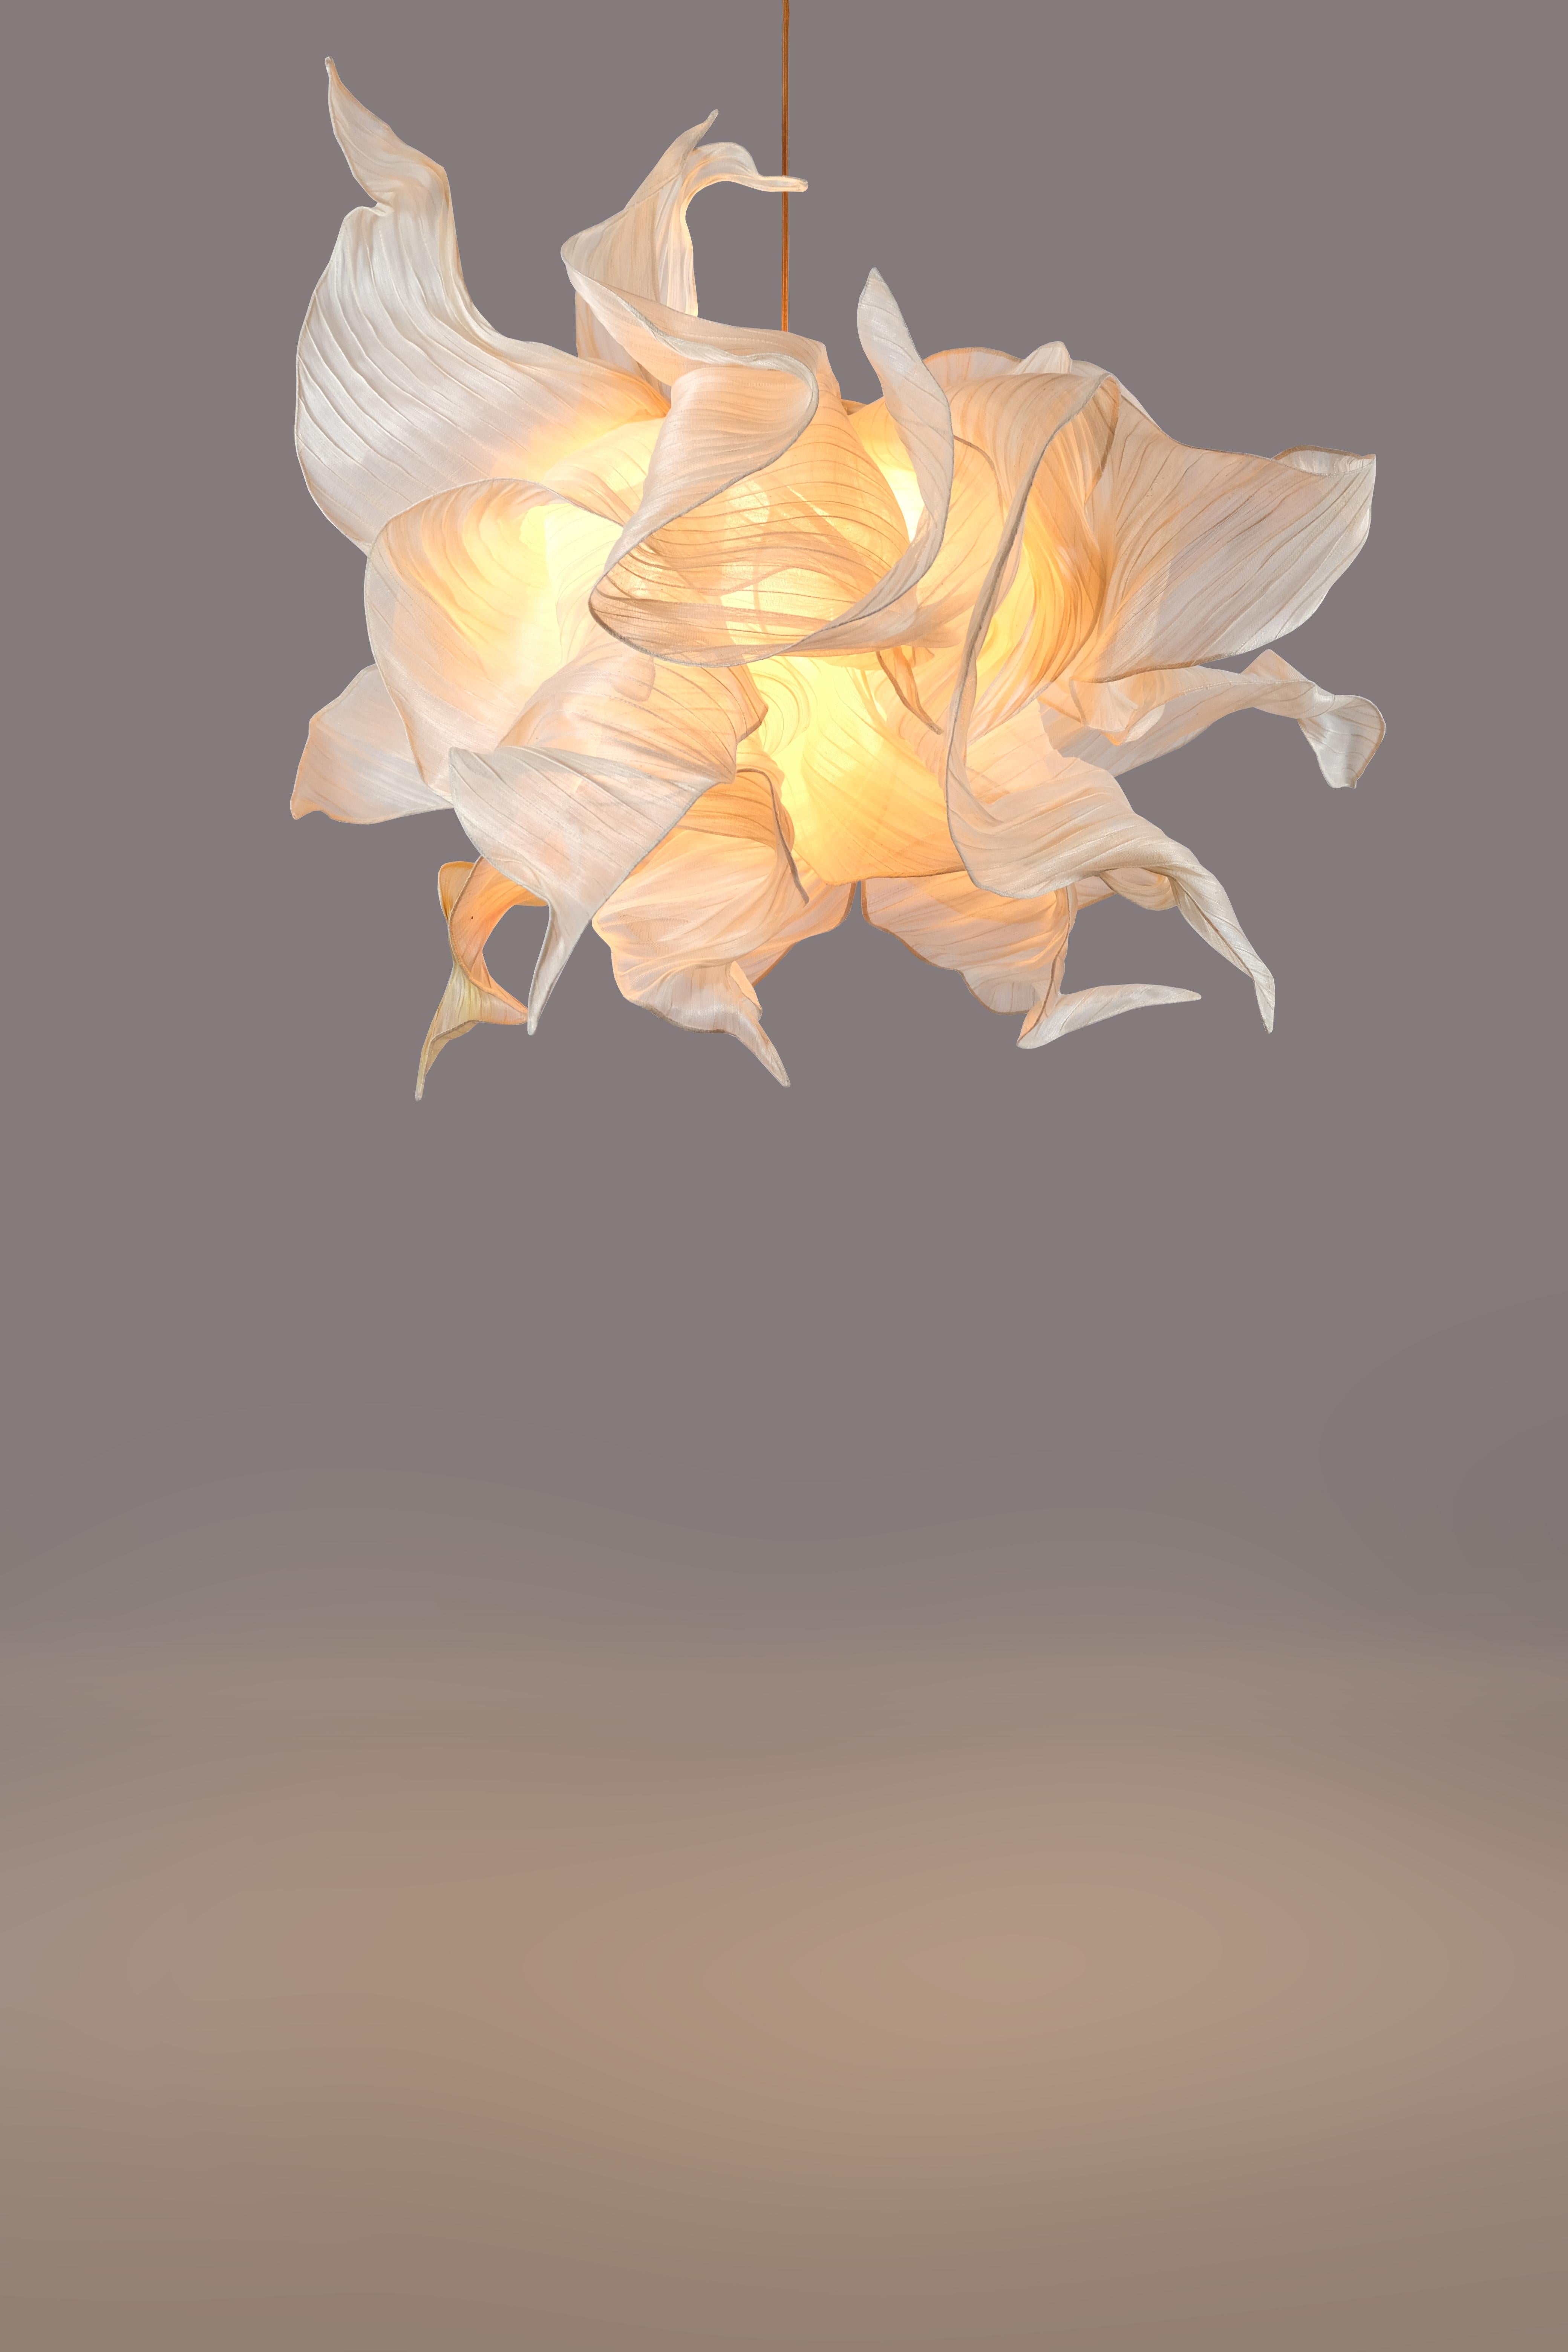 Supernova Collectional, lampe suspendue sculpturale en tissu de Costantini x Studio Mirei

Supernova est la toute dernière œuvre de la célèbre designer Mirei Monticelli.  

Les dimensions sont de 43